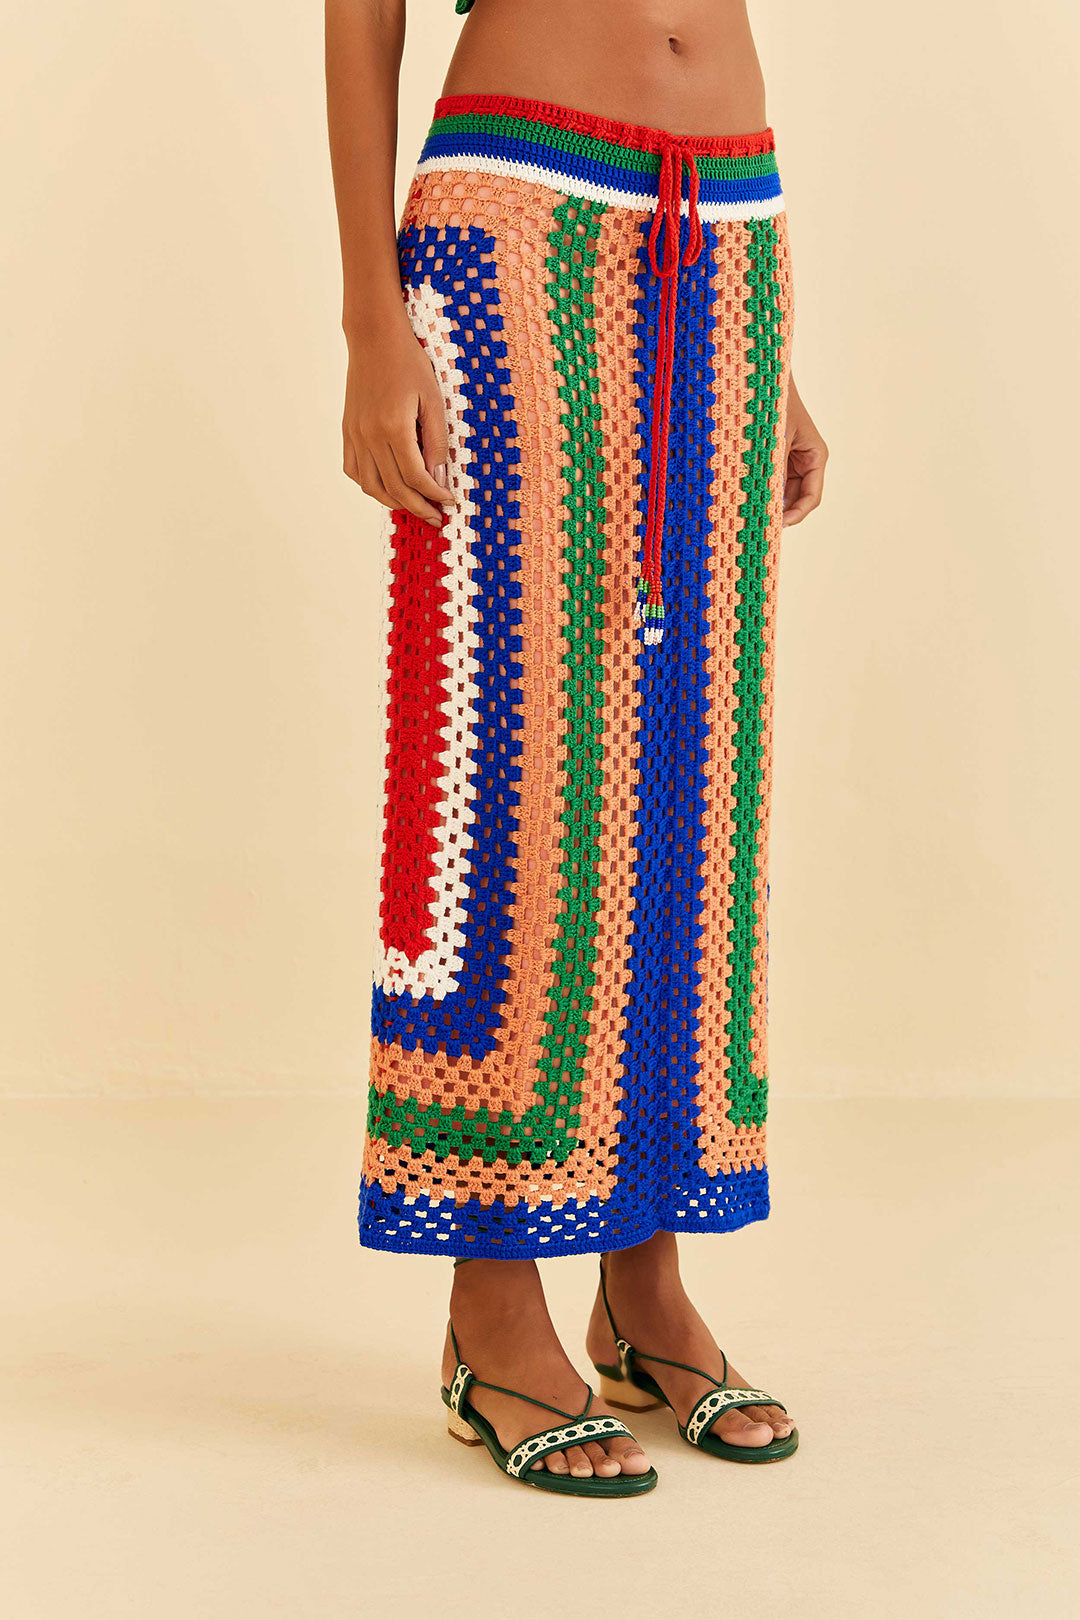 Pitta Crochet Skirt